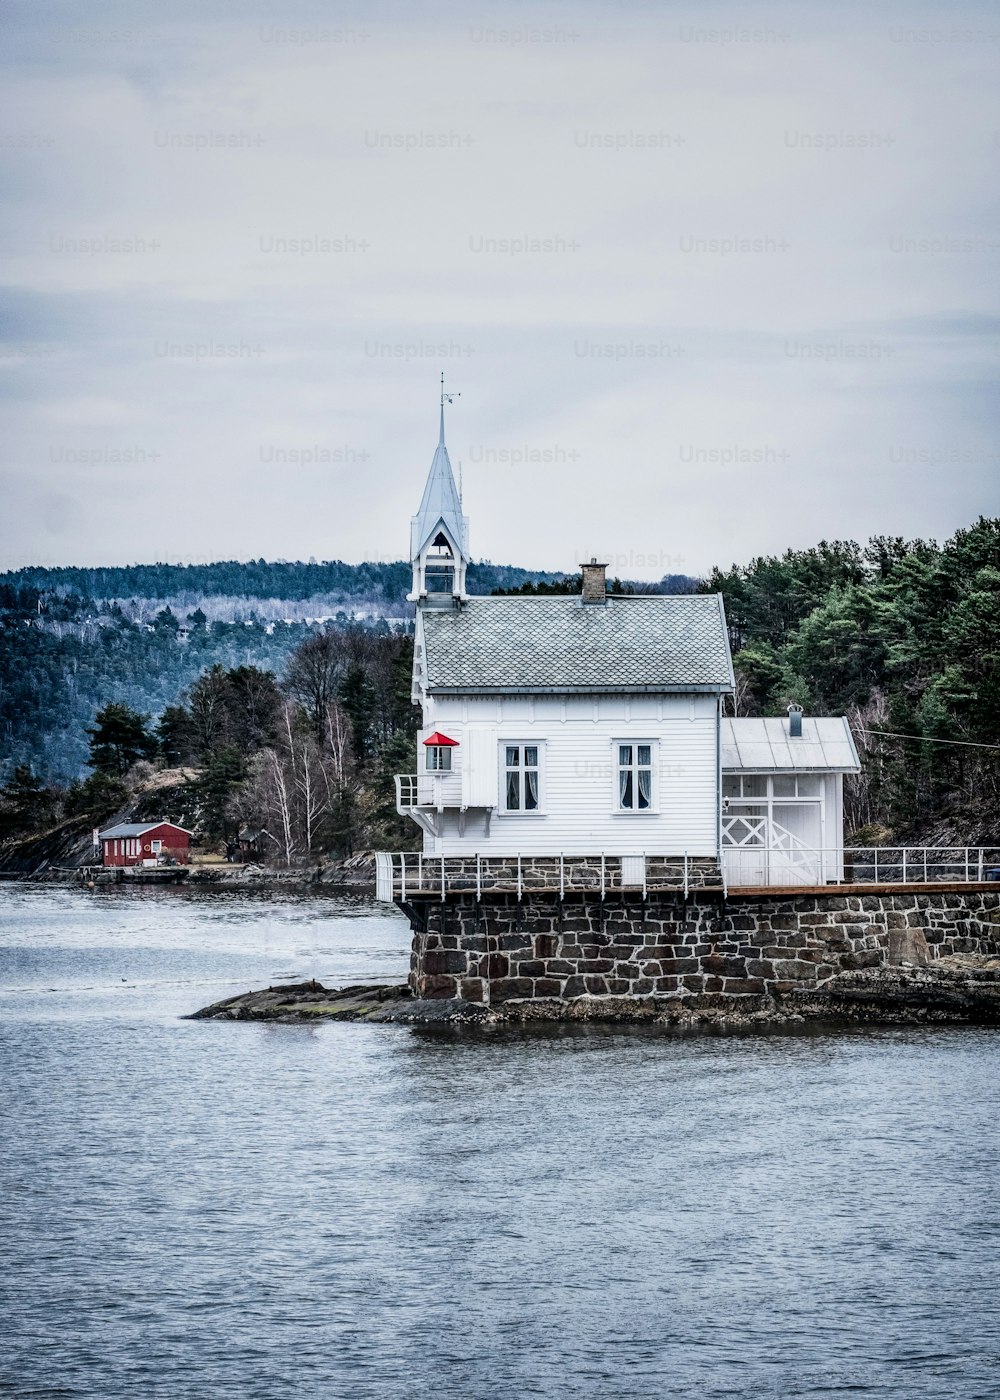 Lo storico faro in legno di Heggholmen a Oslofjord, all'imboccatura del porto di Oslo